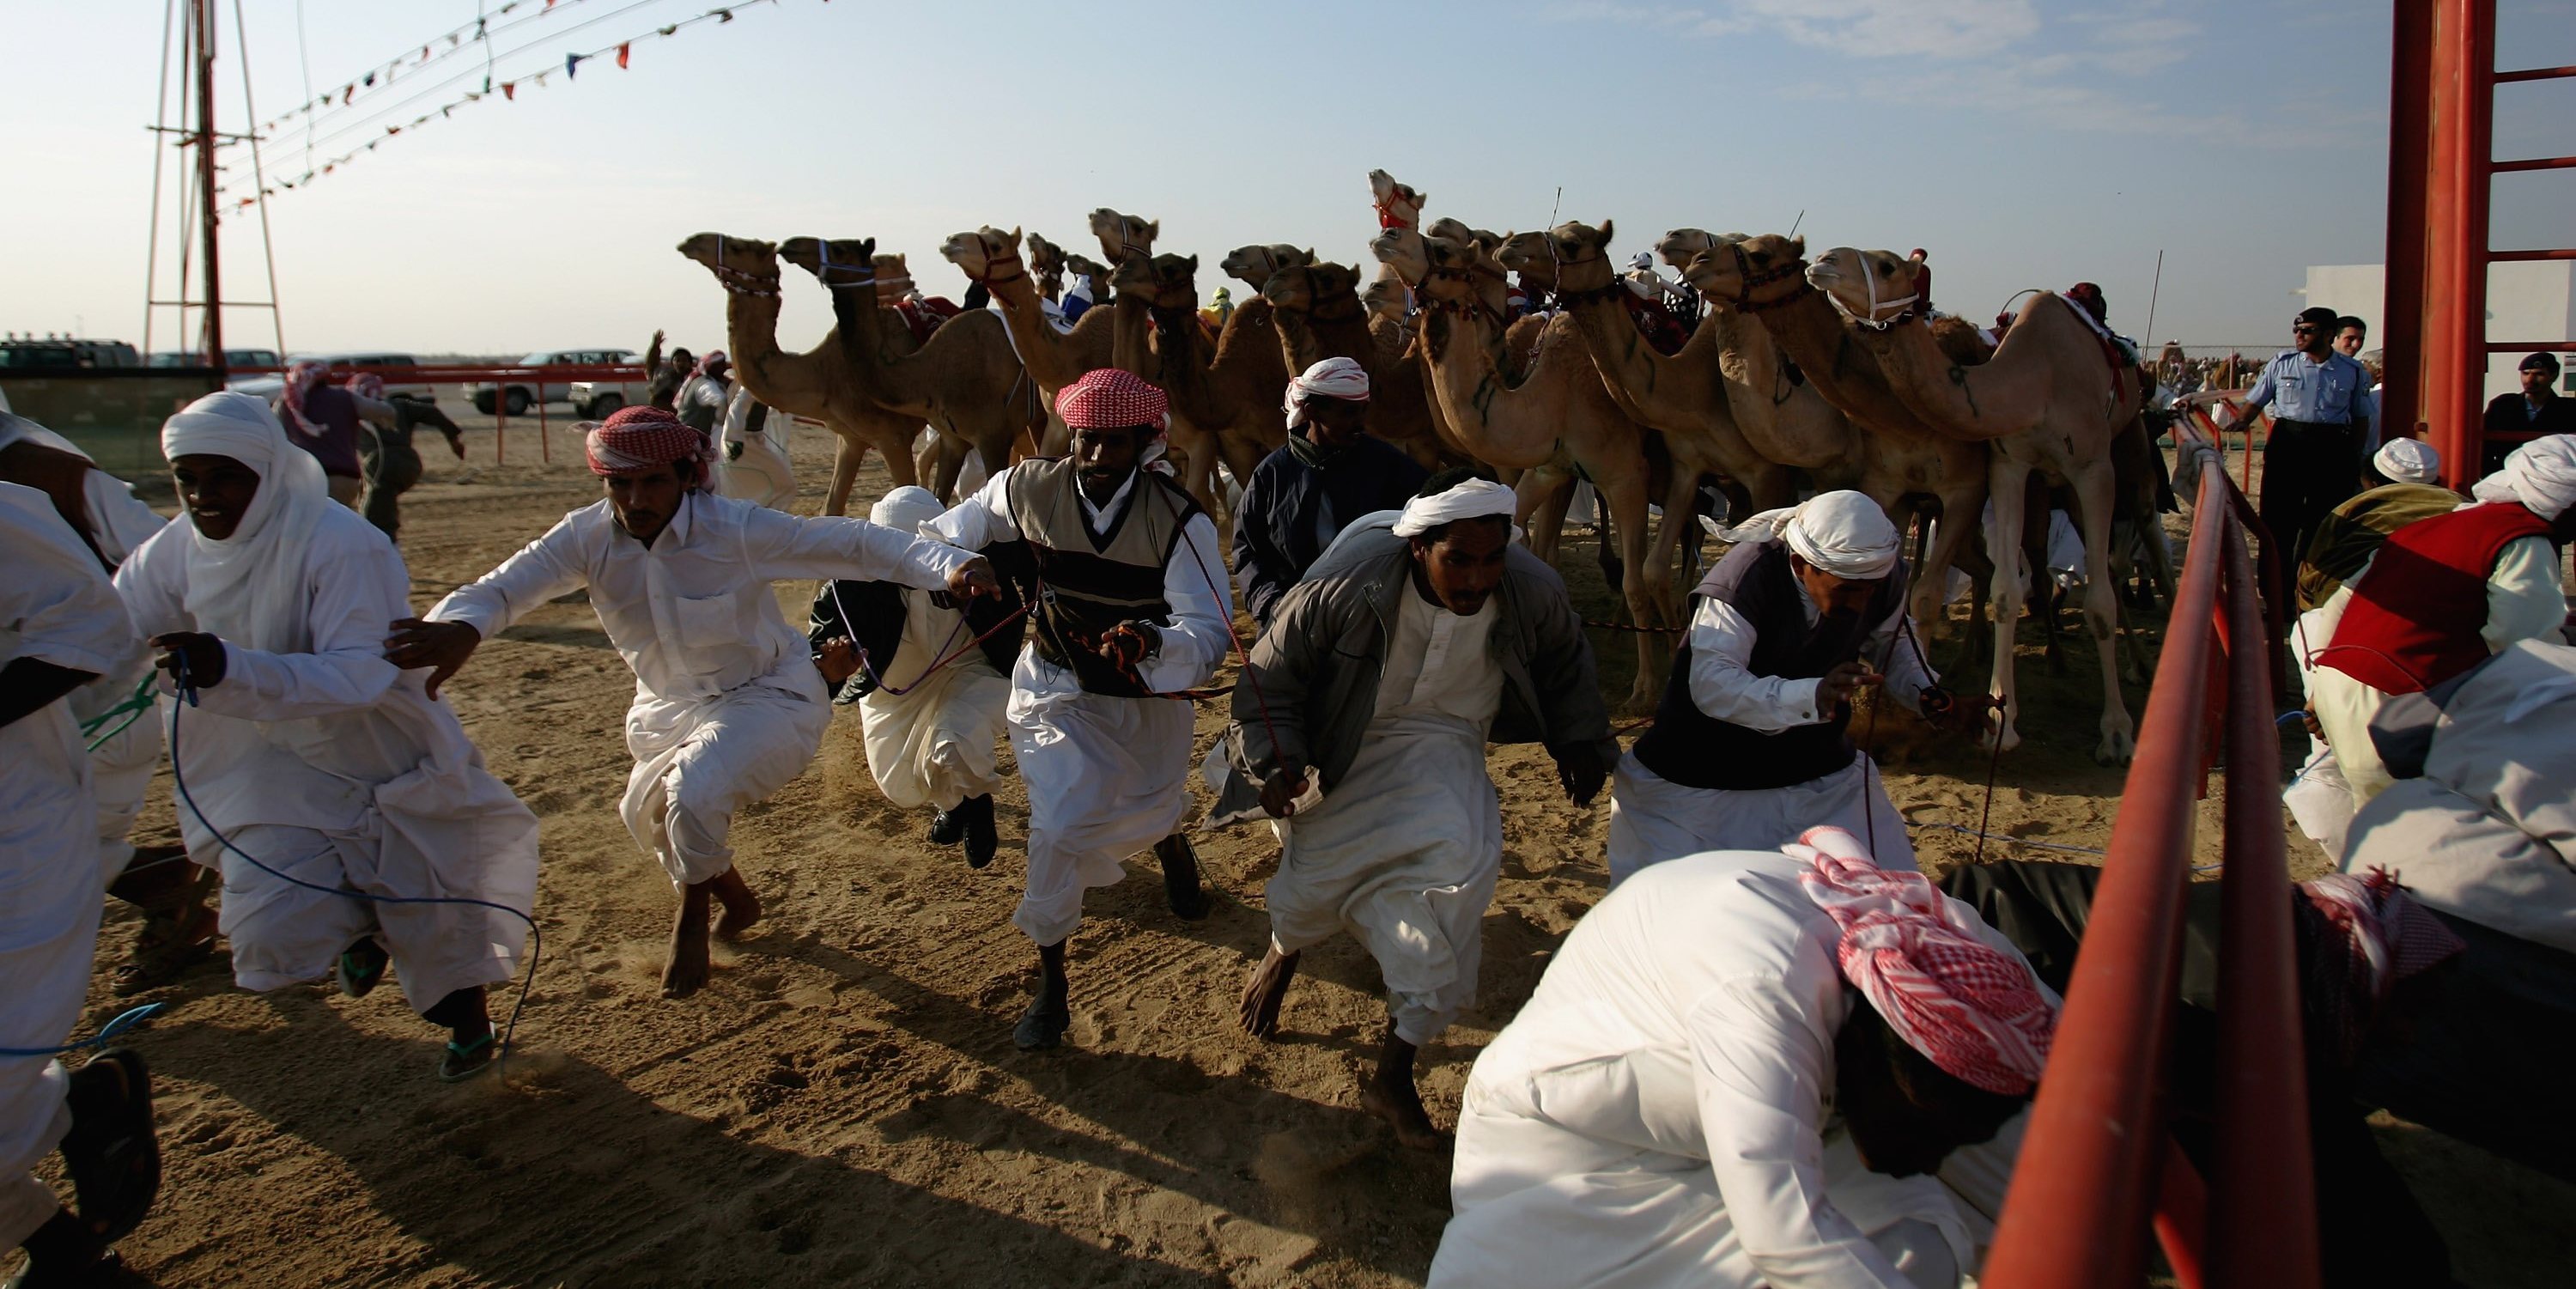 Momento de largada para uma corrida, quando os tratadores (mudammers) saem da frente e camelos arrancam com toda a velocidade